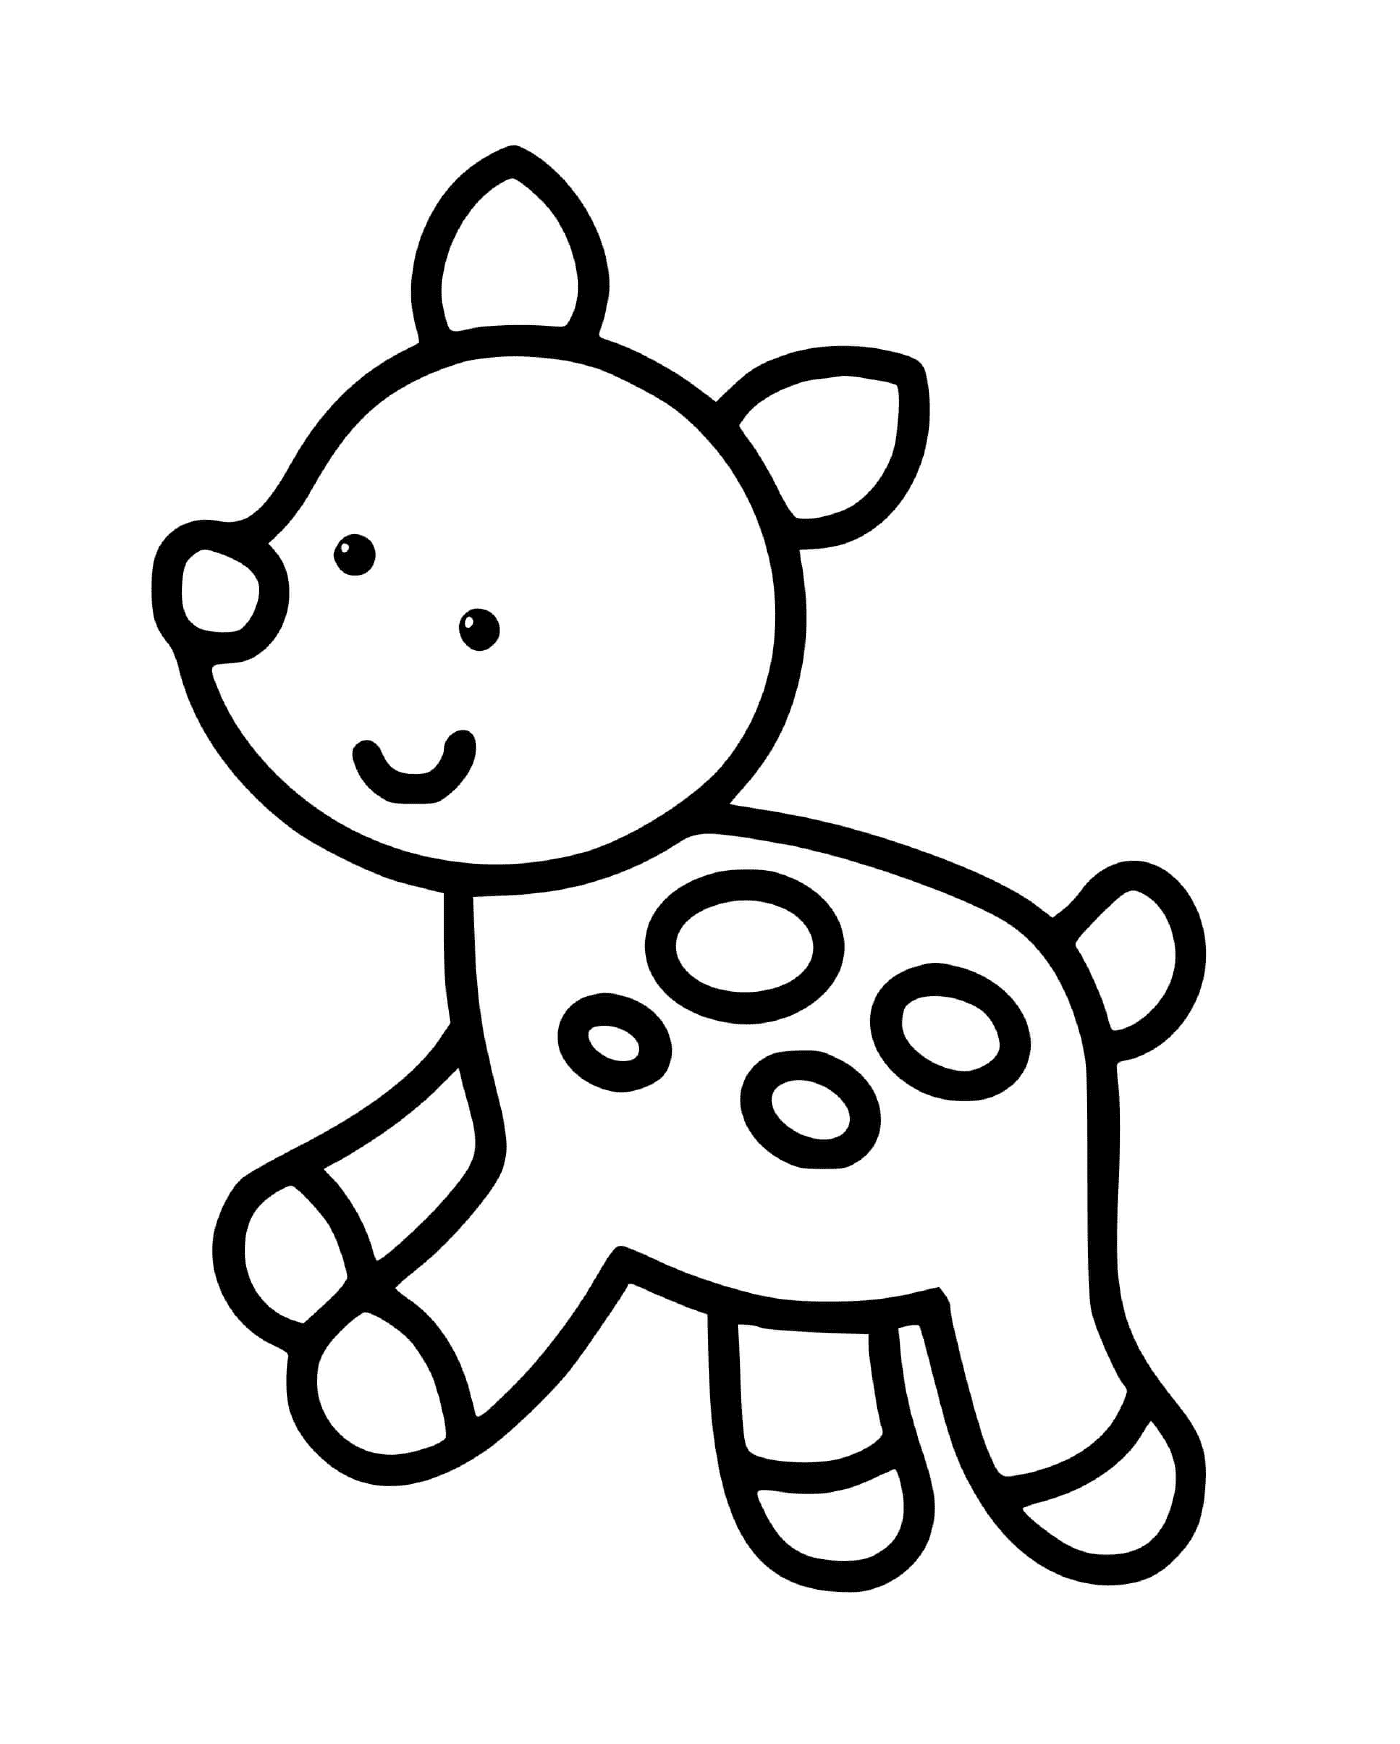  Un animale carino facile da disegnare per i bimbi di 2 anni 